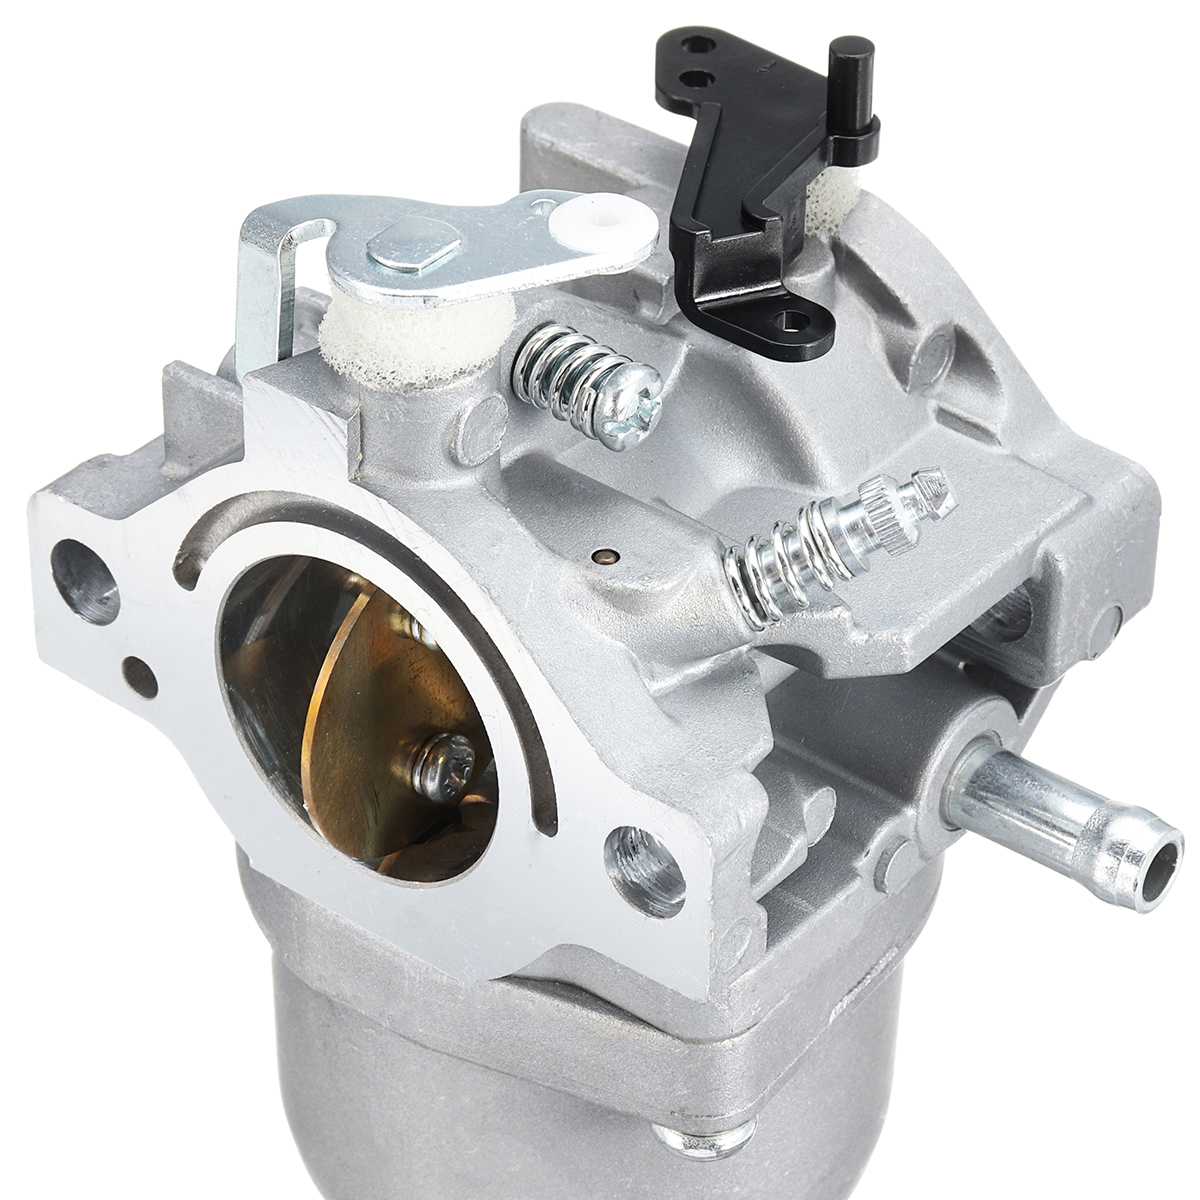 Carburetor Carb Engine Motor Parts Fits For Walbro LMT 5-4993 